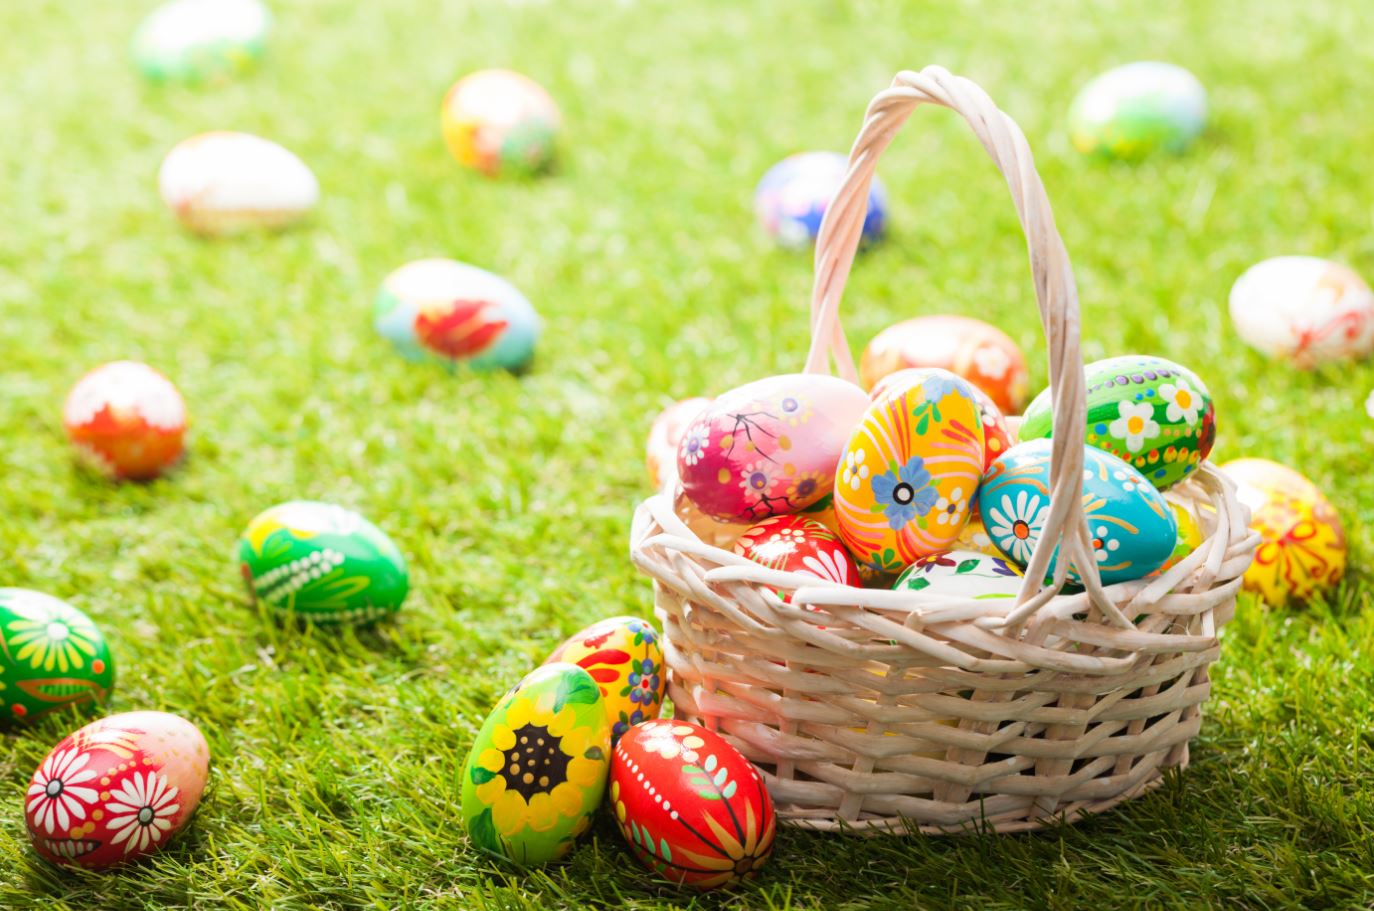 Tradiții și obiceiuri în cea de a doua zi de Paște. Ce trebuie să faci neapărat luni